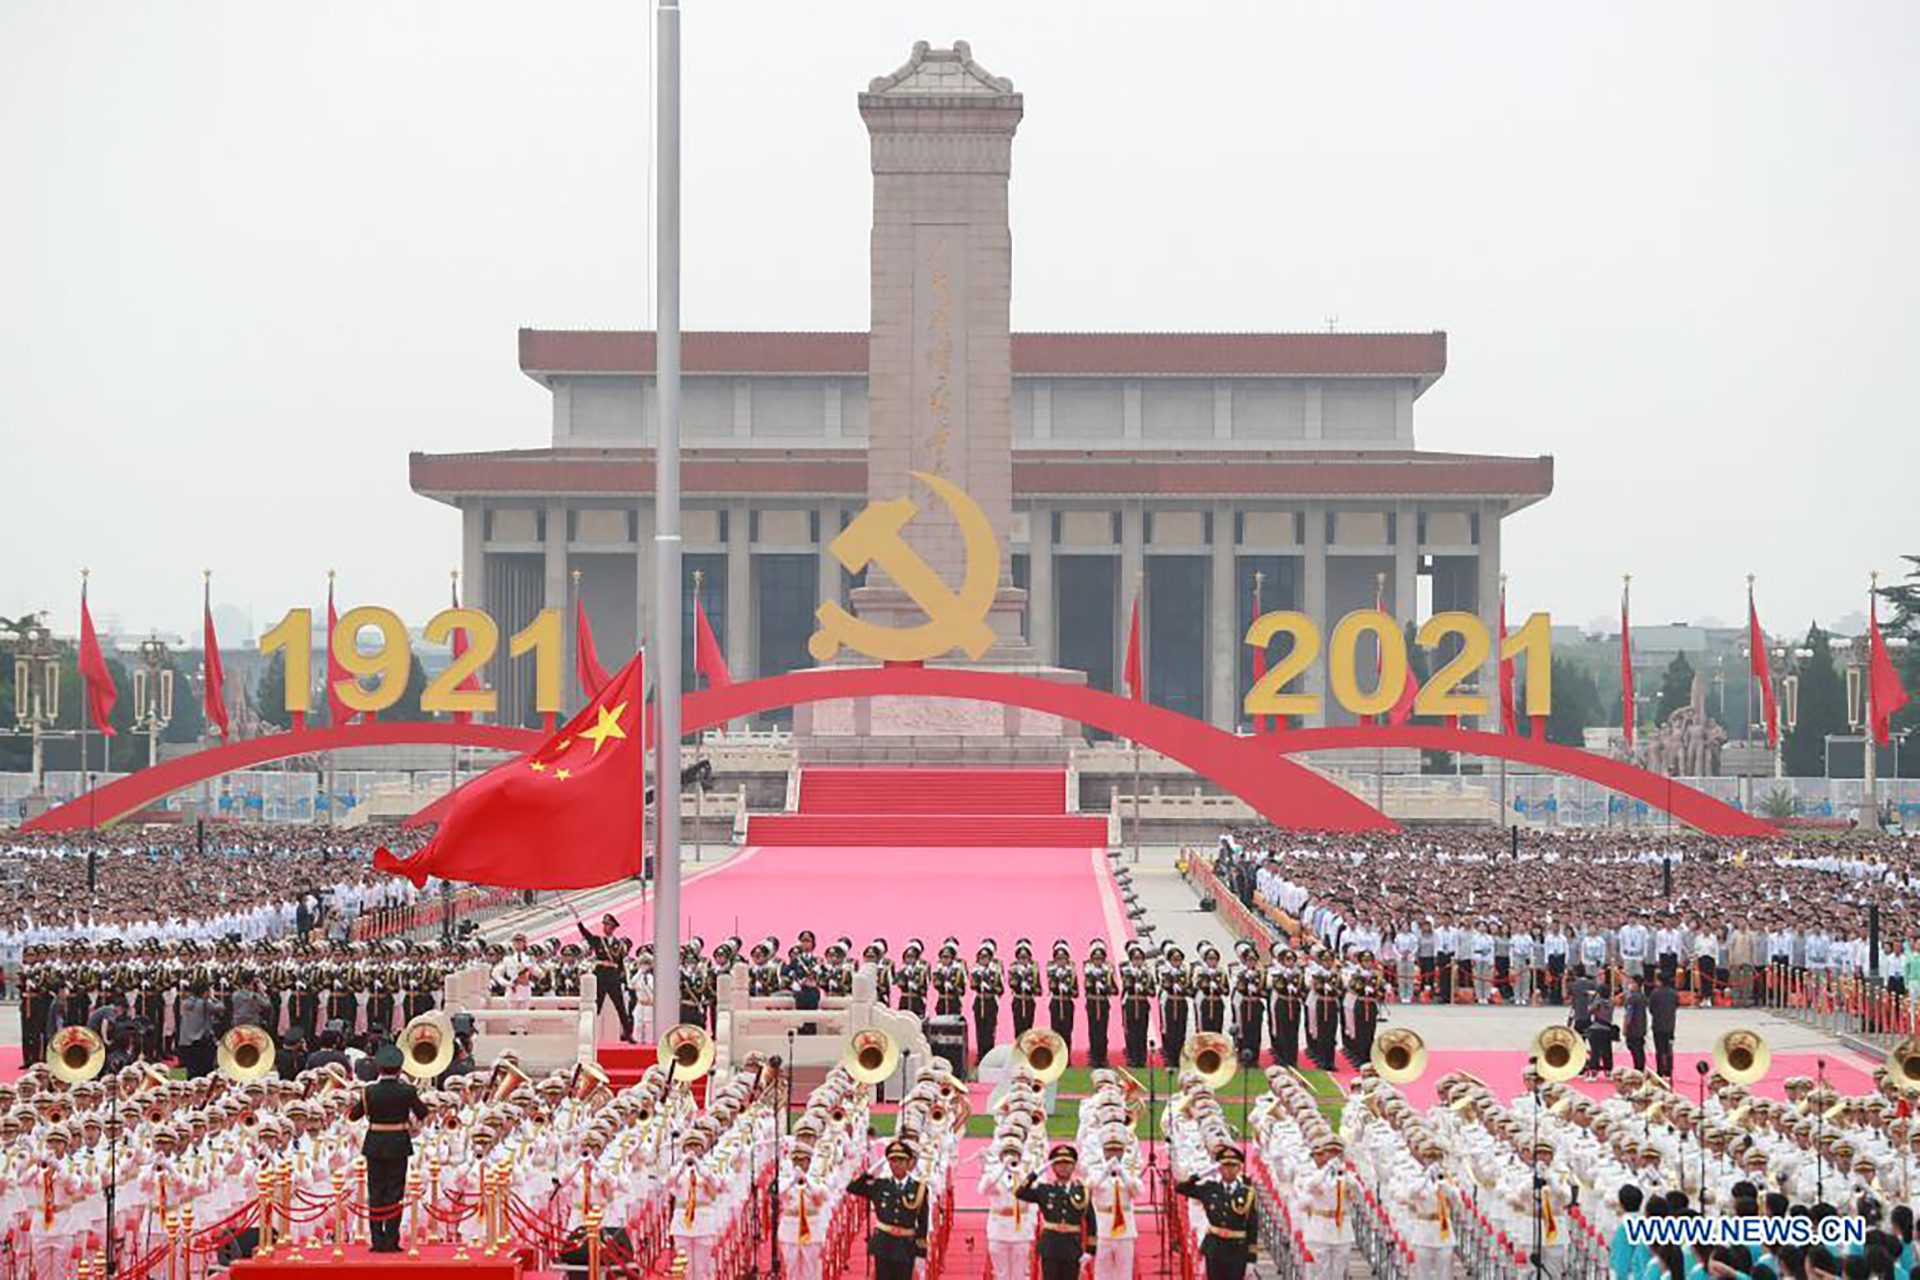 Sáng 1/7, tại Quảng trường Thiên An Môn ở thủ đô Bắc Kinh, lễ kỷ niệm 100 năm thành lập Đảng Cộng sản Trung Quốc đã diễn ra trọng thể. 